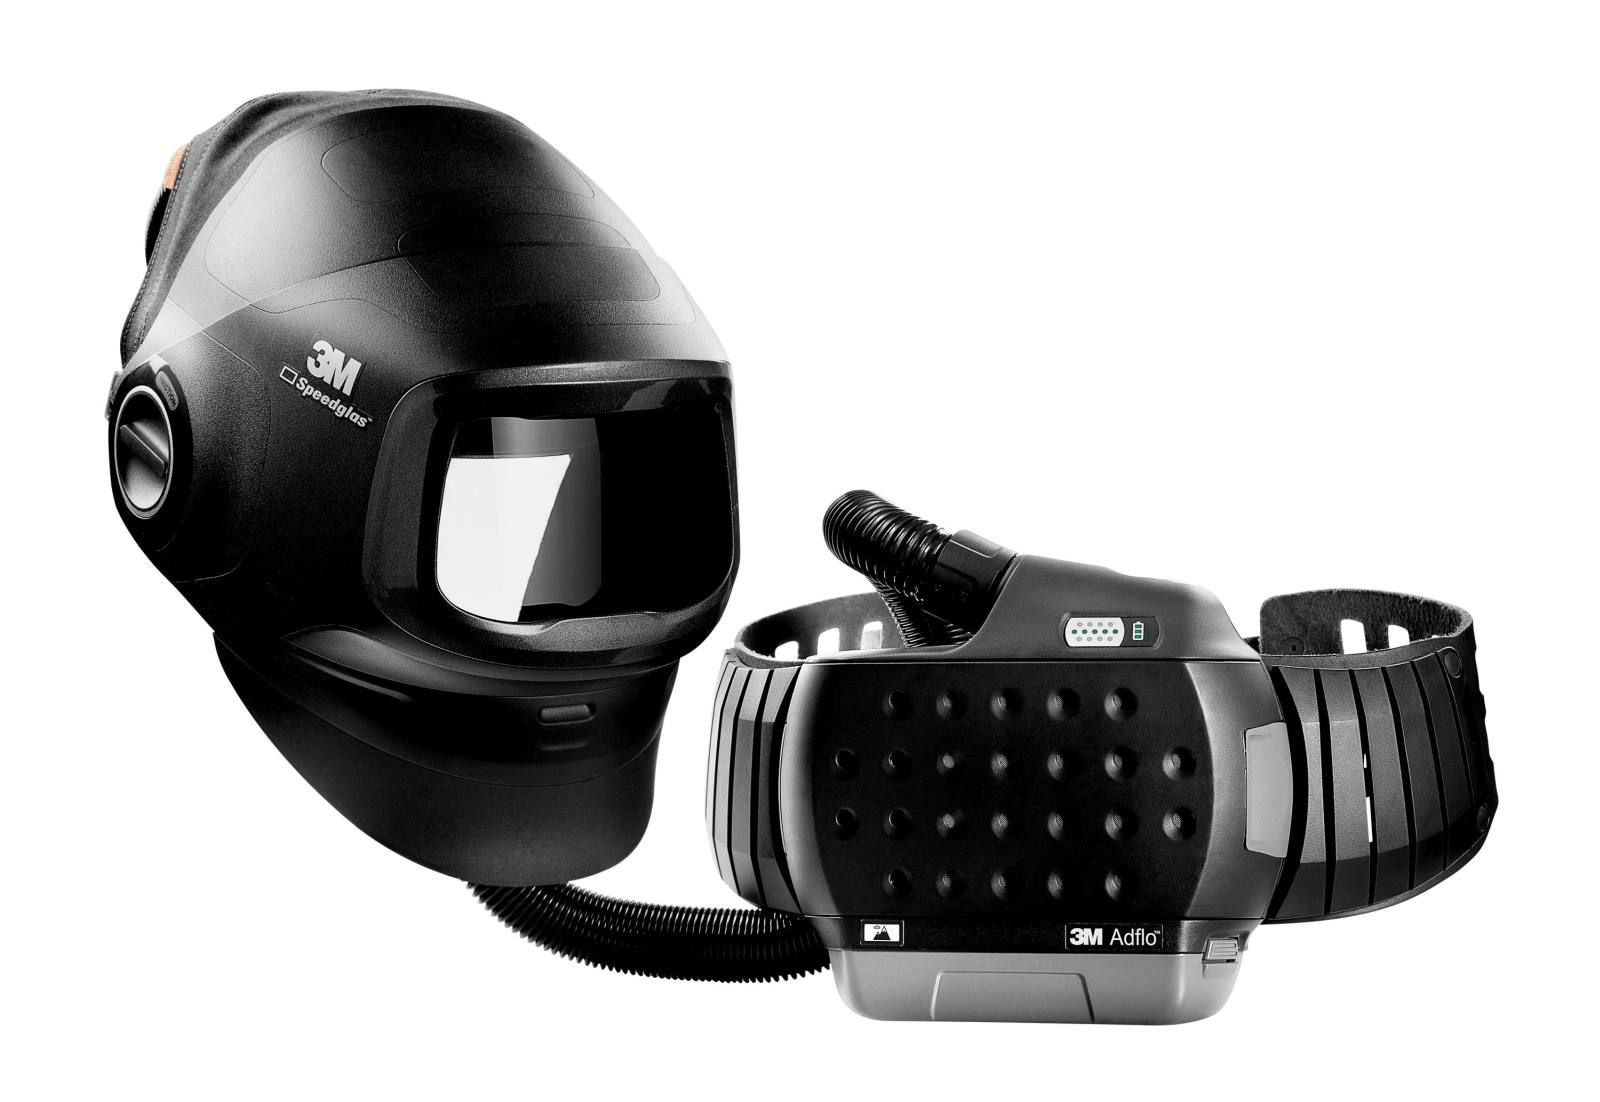 Maschera per saldatura ad alte prestazioni 3M Speedglas G5-01 con respiratore 3M Adflo, batteria ad alte prestazioni, set di avviamento dei materiali di consumo e borsa di stoccaggio, senza filtro per saldatura, H617809